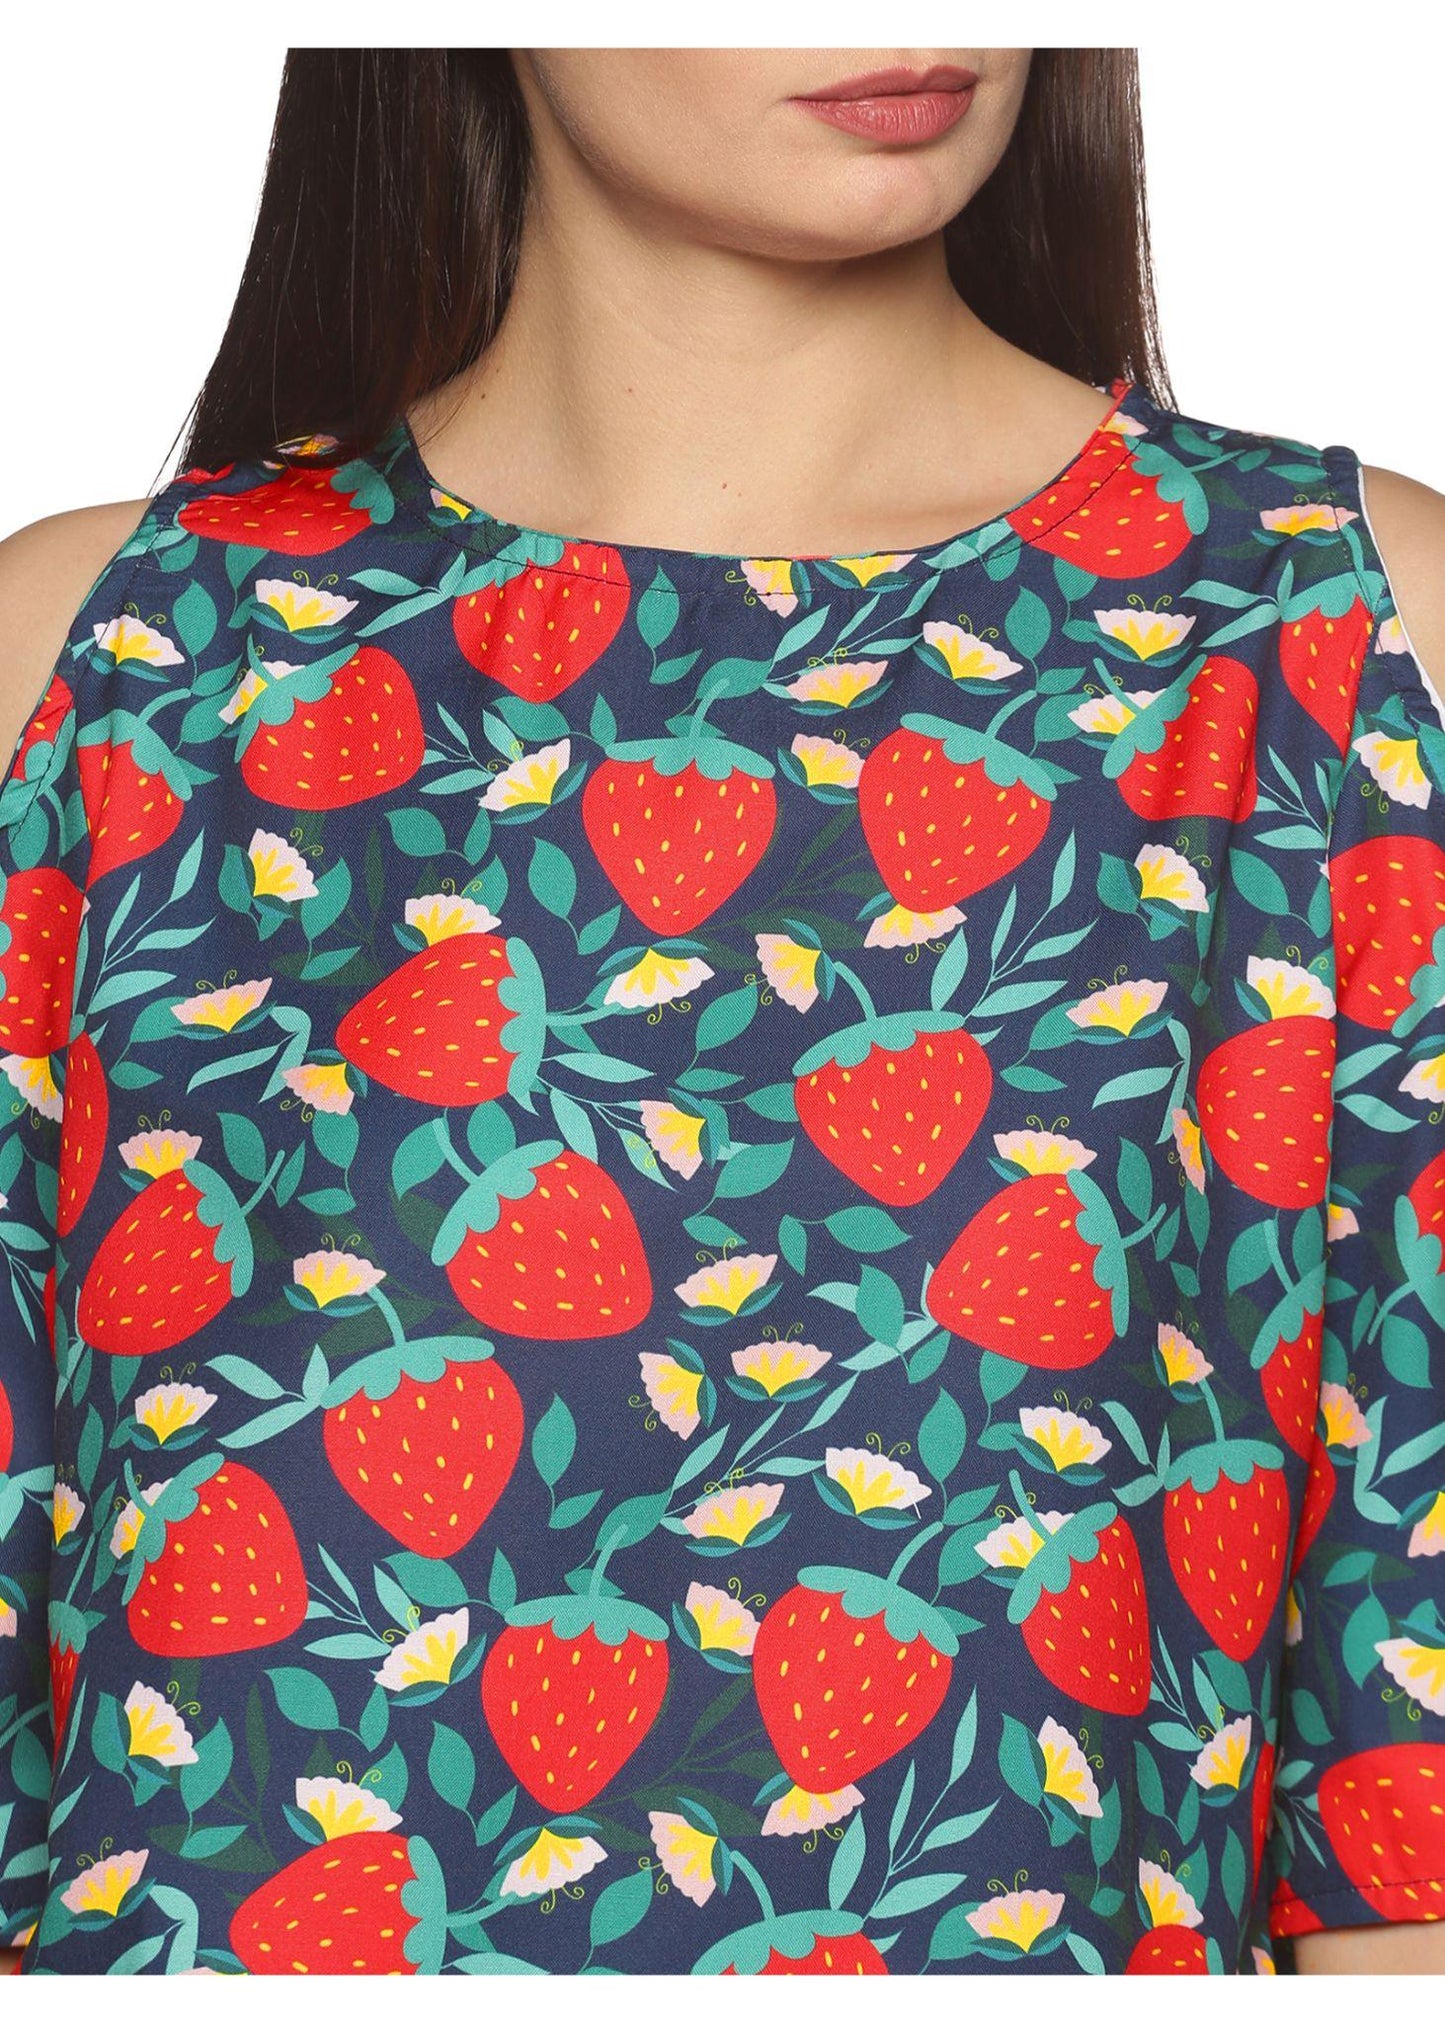 Strawberry Couple Matching Dress - Tusok